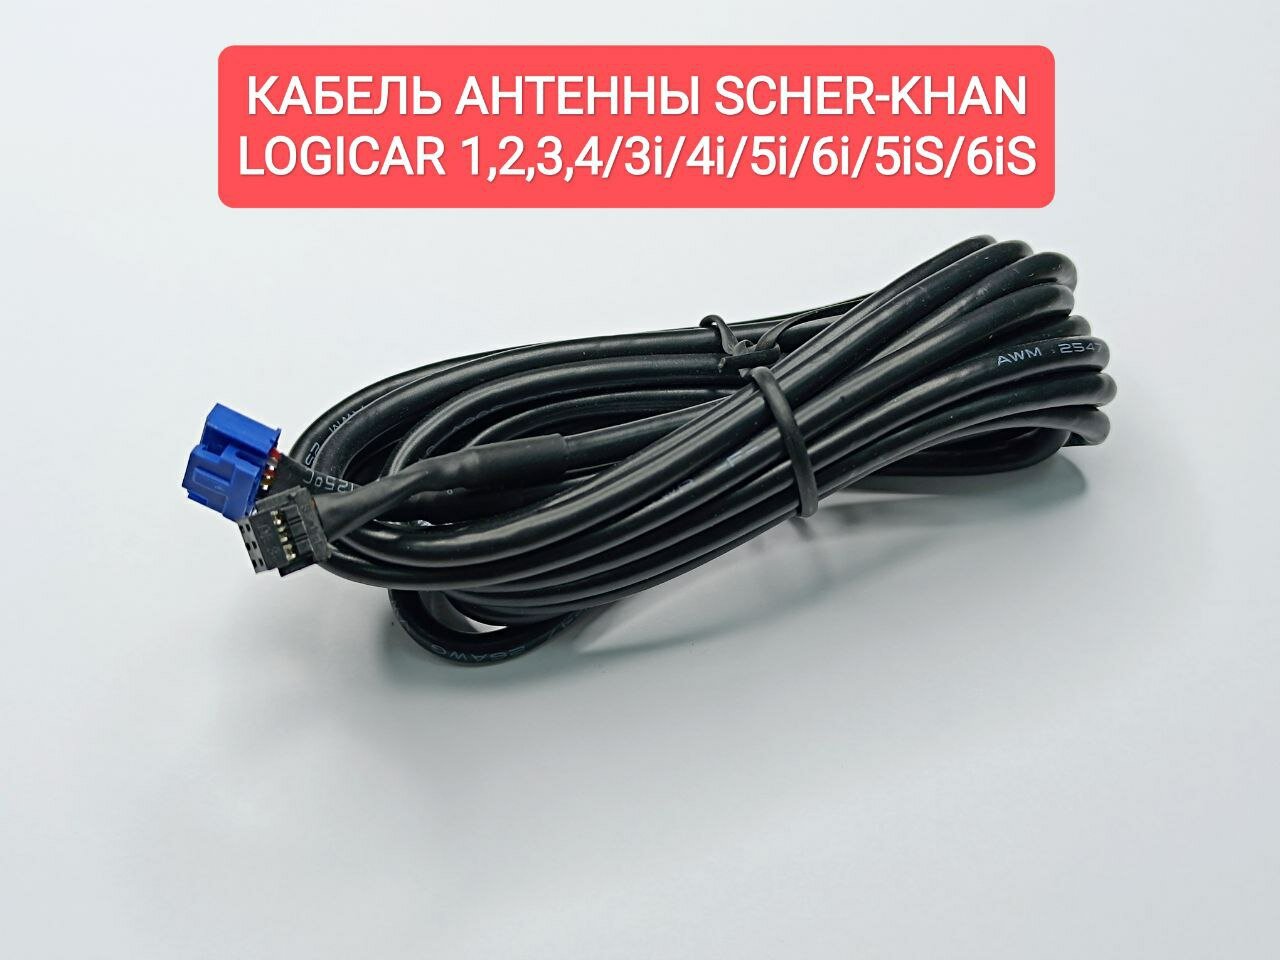 Кабель для антенны Scher-Khan Logicar 1/2/3/4/3i/4i/5i/6i/5iS/6iS. Оригинальный (Шерхан Логикар)